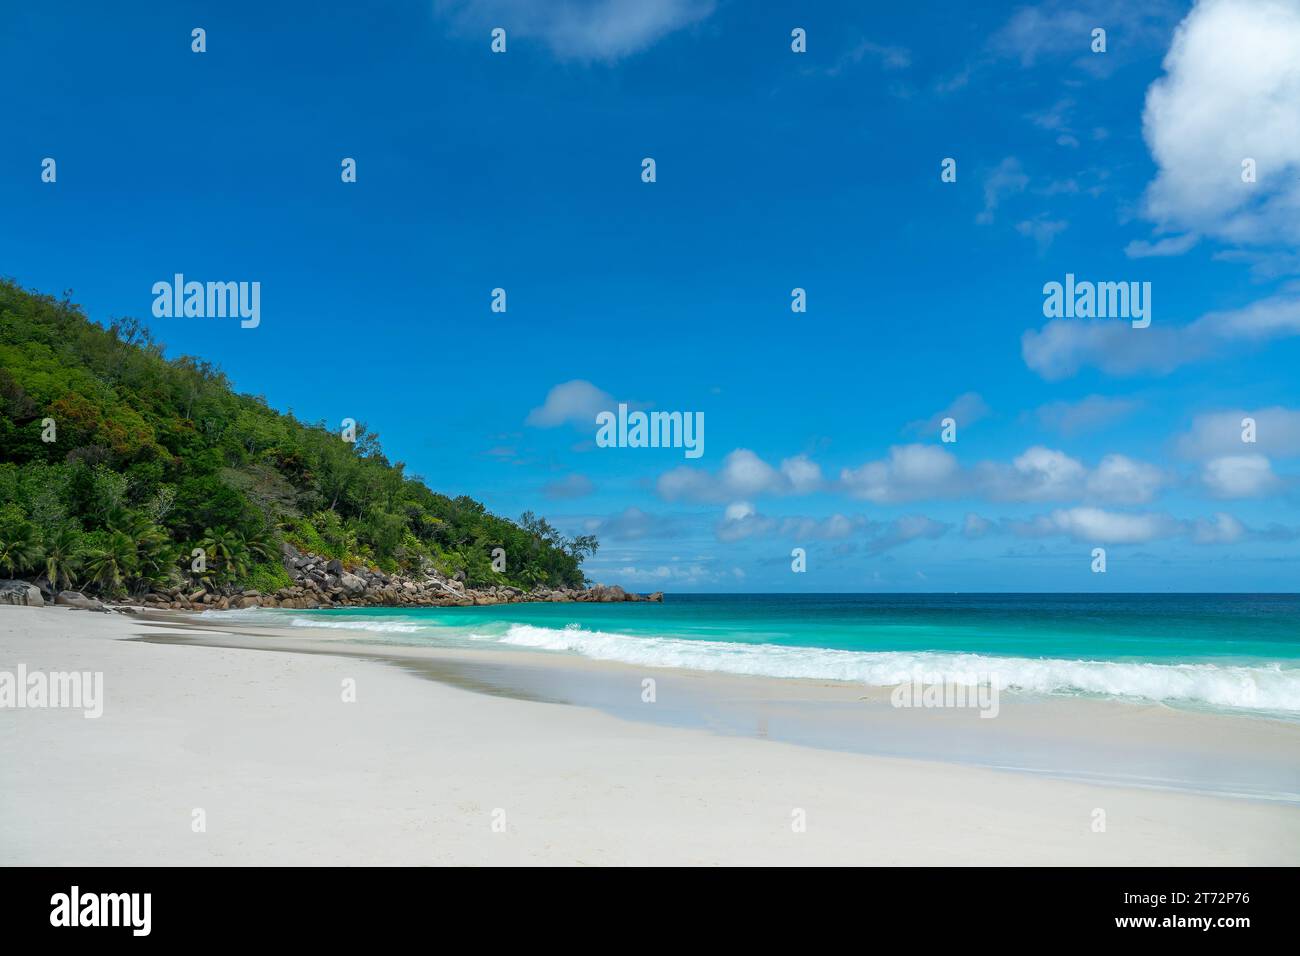 Plage pittoresque d'Anse Georgette sur l'île de Praslin, Seychelles Banque D'Images